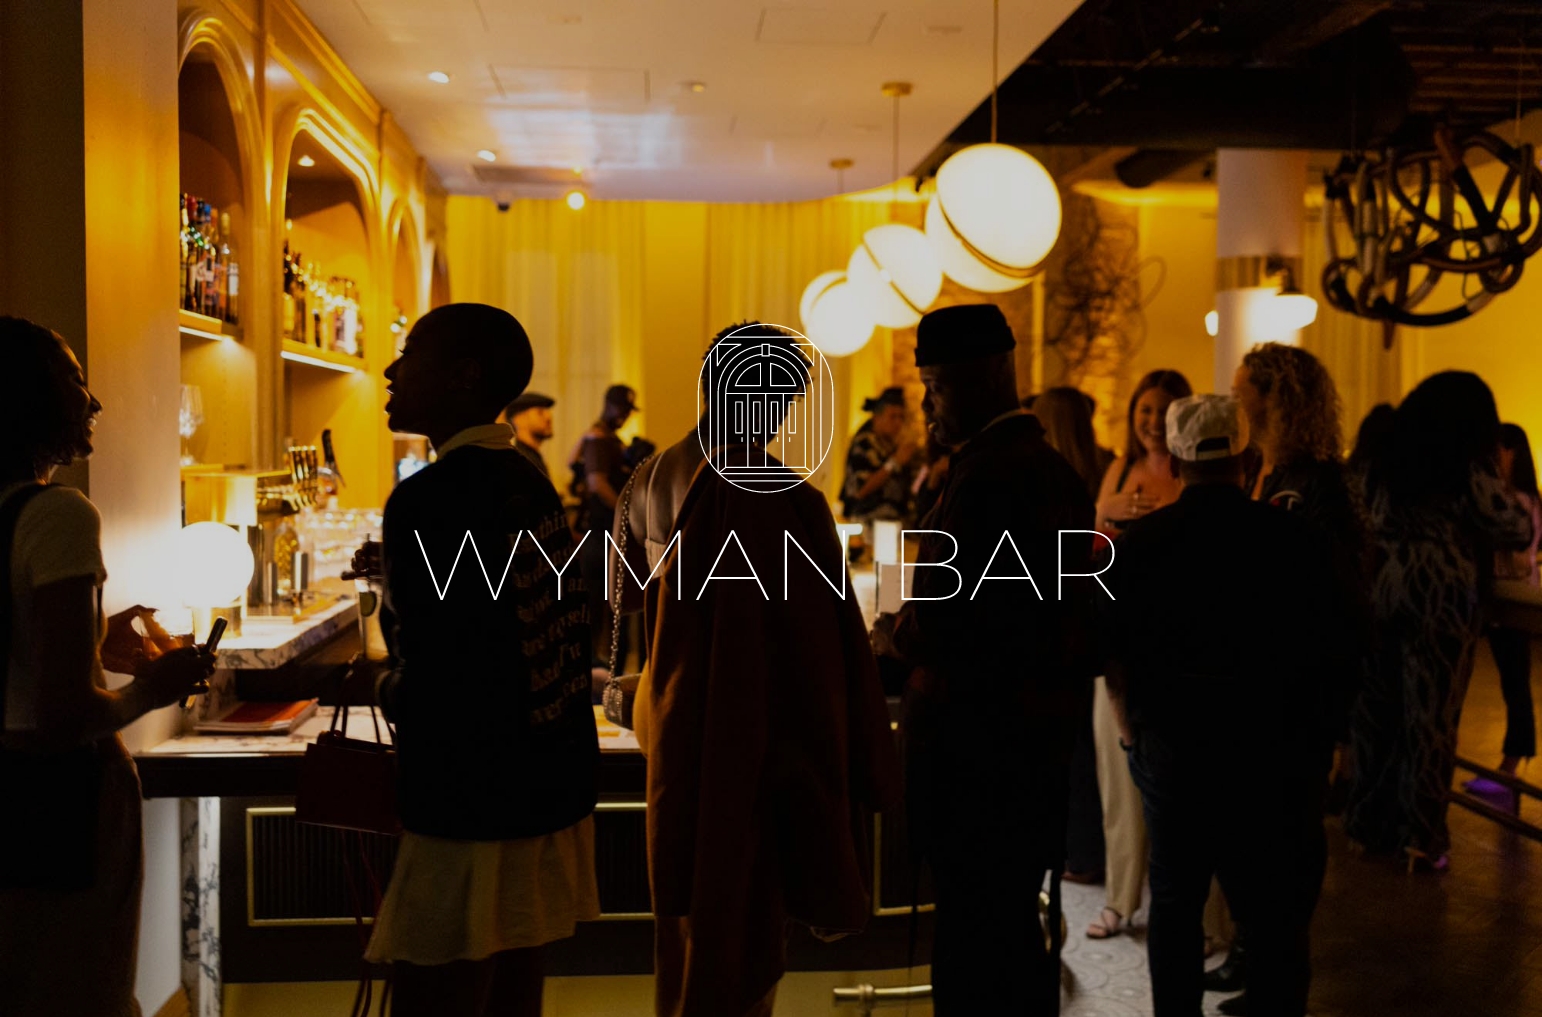 The Wyman Bar at NeueHouse Bradbury in Los Angeles